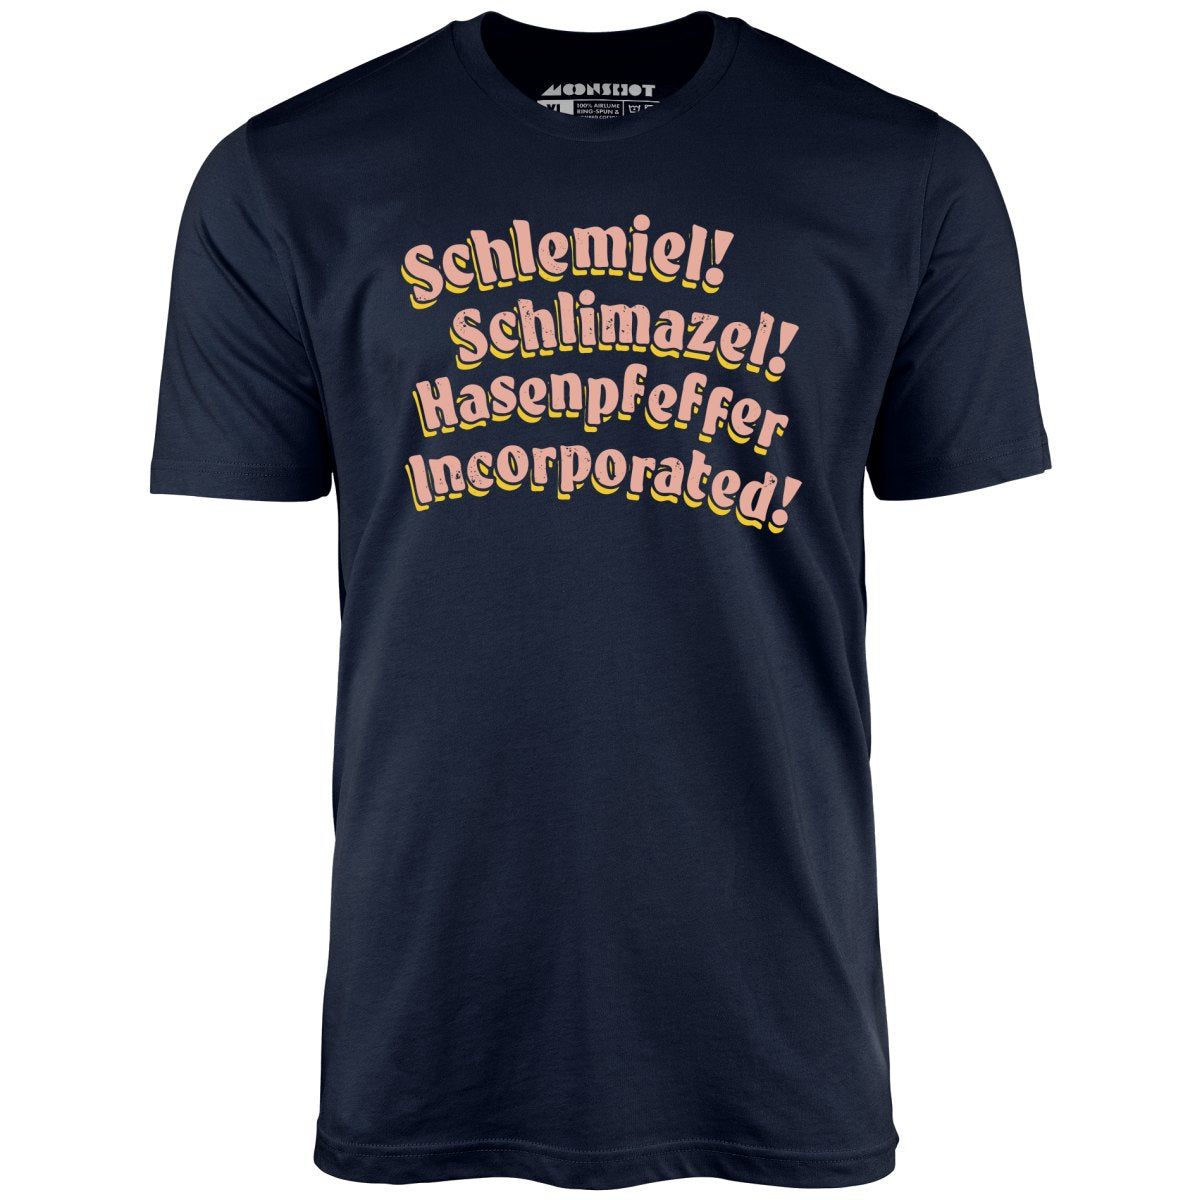 Schlemiel! Schlimazel! Hasenpfeffer Incorporated - Unisex T-Shirt